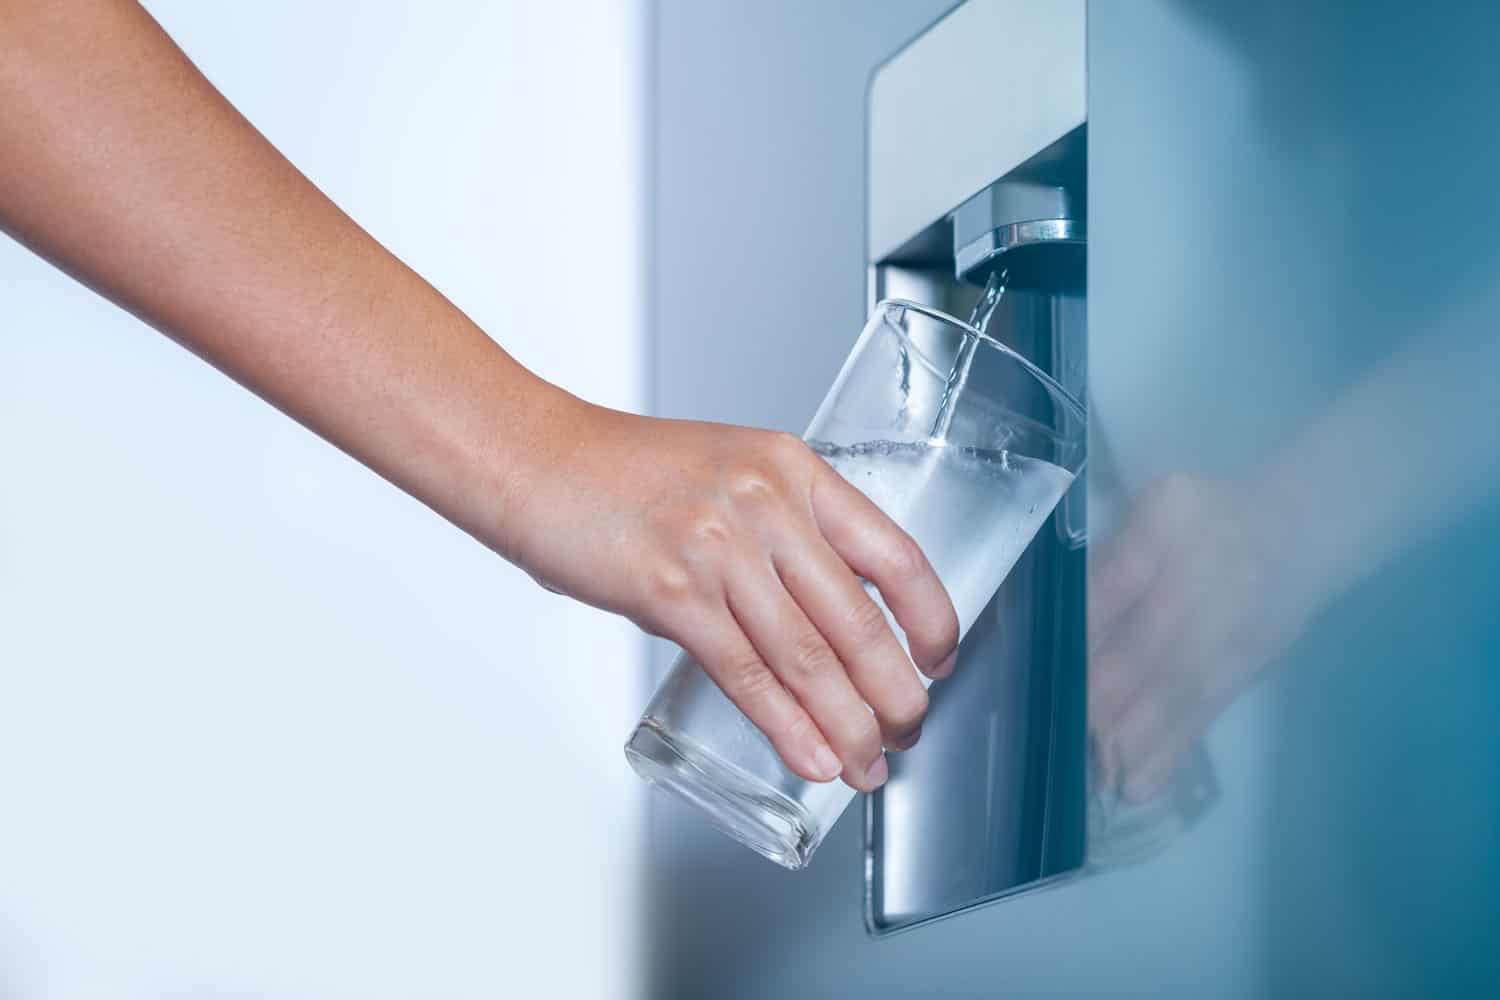 Water dispenser from dispenser of home fridge